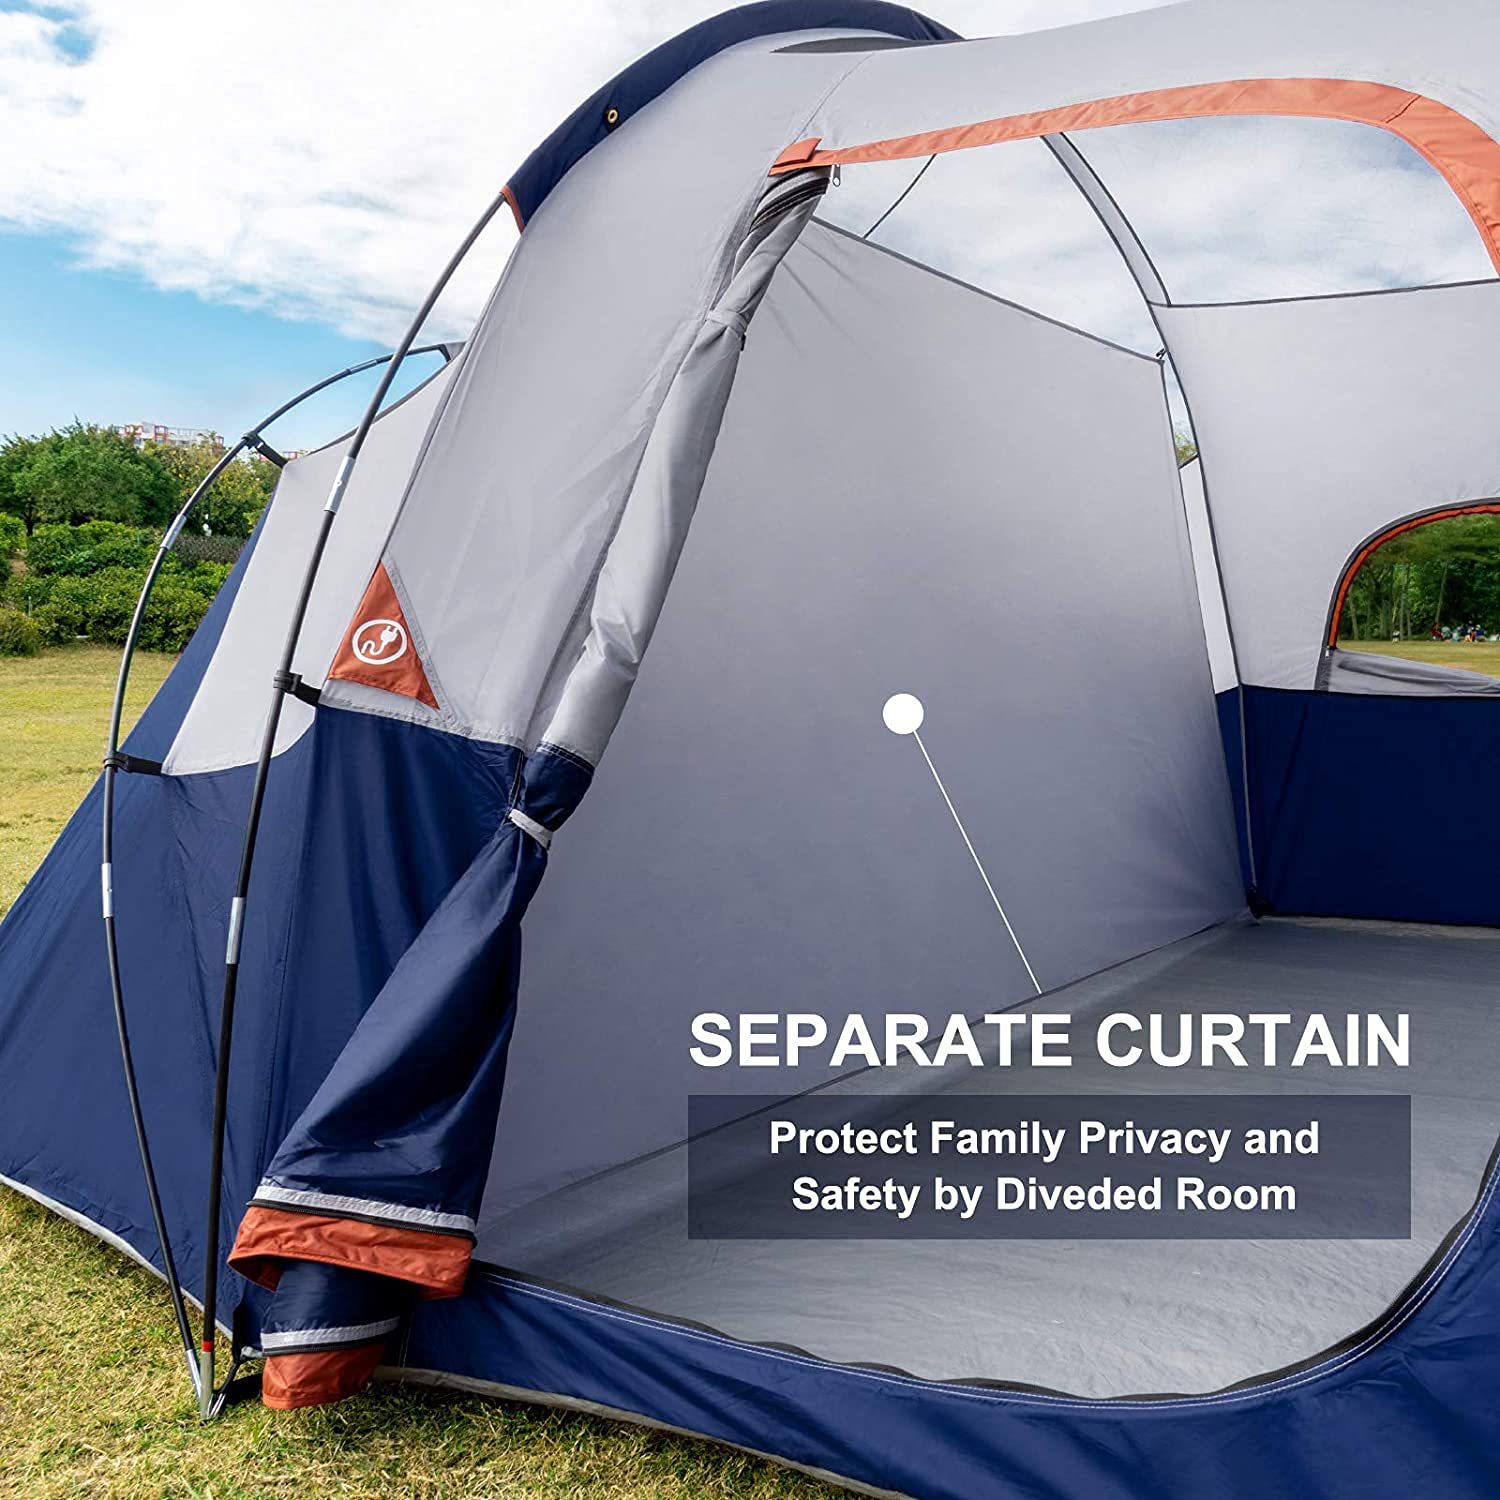 Tent-8-Person-Camping-Tents, водонепроницаемая ветрозащитная семейная палатка, 5 больших сетчатых окон, двухслойная, разделенная занавеска для отдельной комнаты, портативная с сумкой для переноски